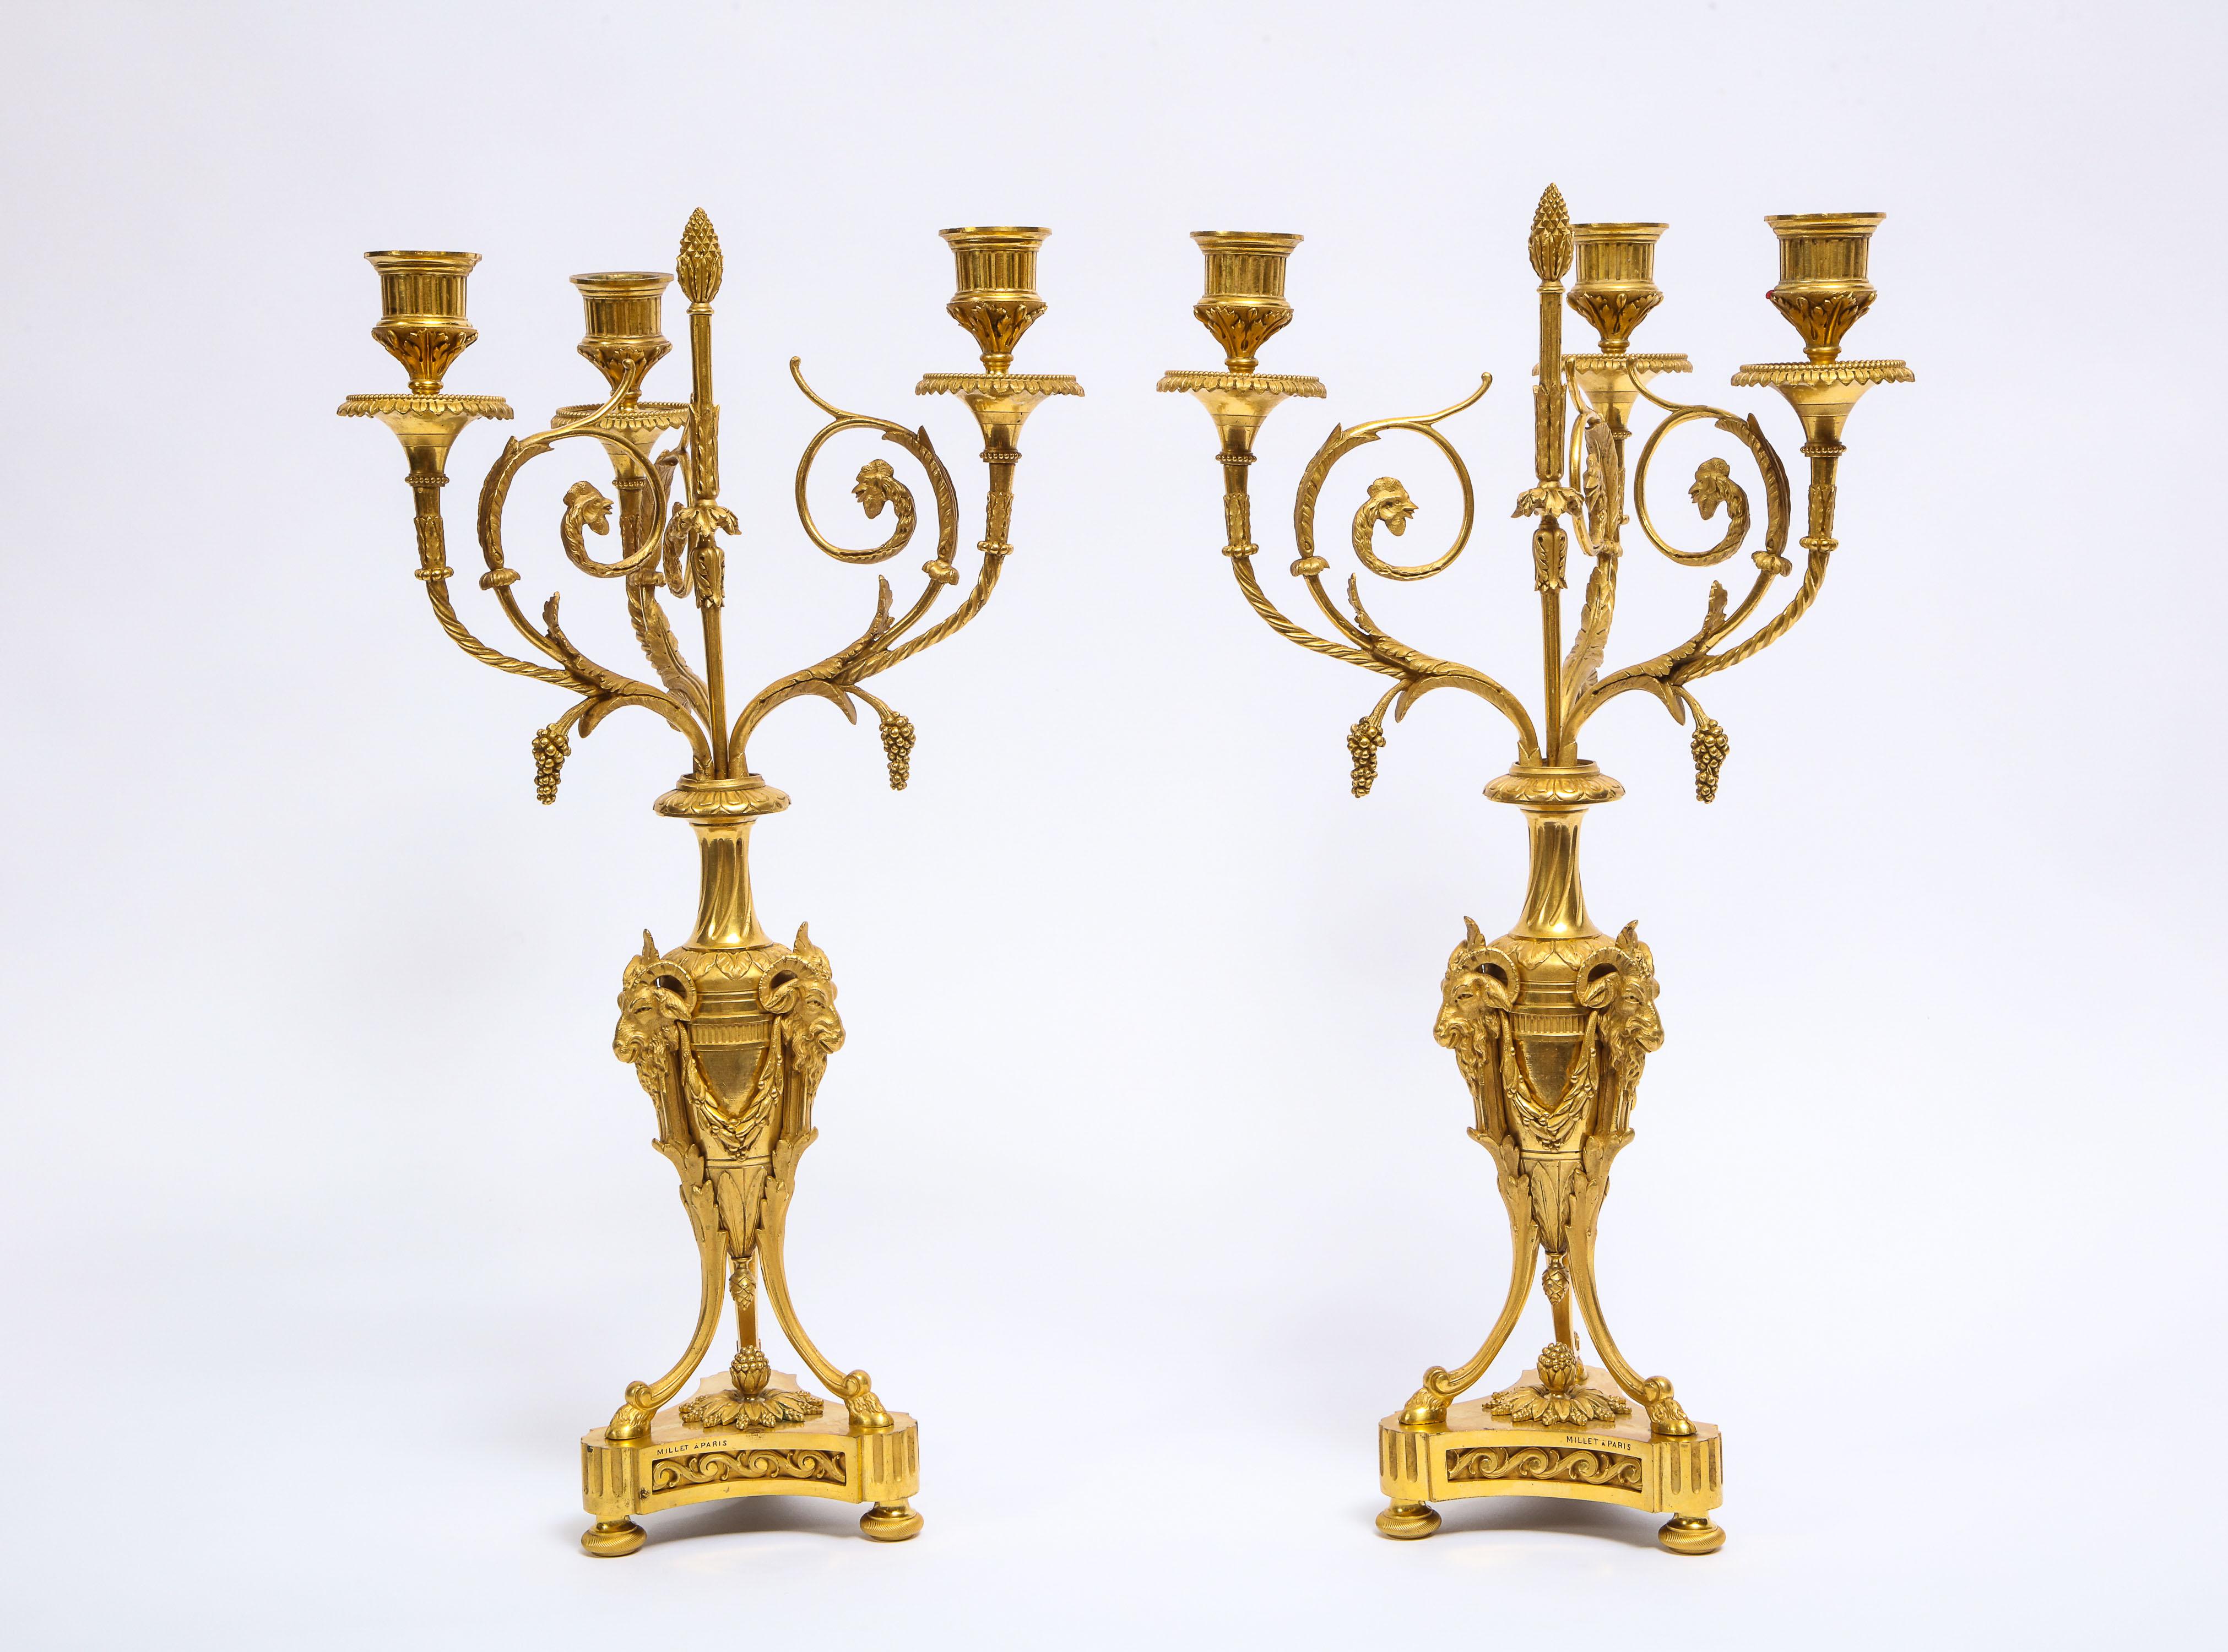 Ein fabelhaftes Paar antiker französischer dreiarmiger Kandelaber im Louis-XVI-Stil aus Doré-Bronze. Jeder Kandelaber wurde fein gegossen und mit feinster Doré-Bronze und Handziselierung veredelt, so dass jeder Aspekt der Arme, des Körpers und des